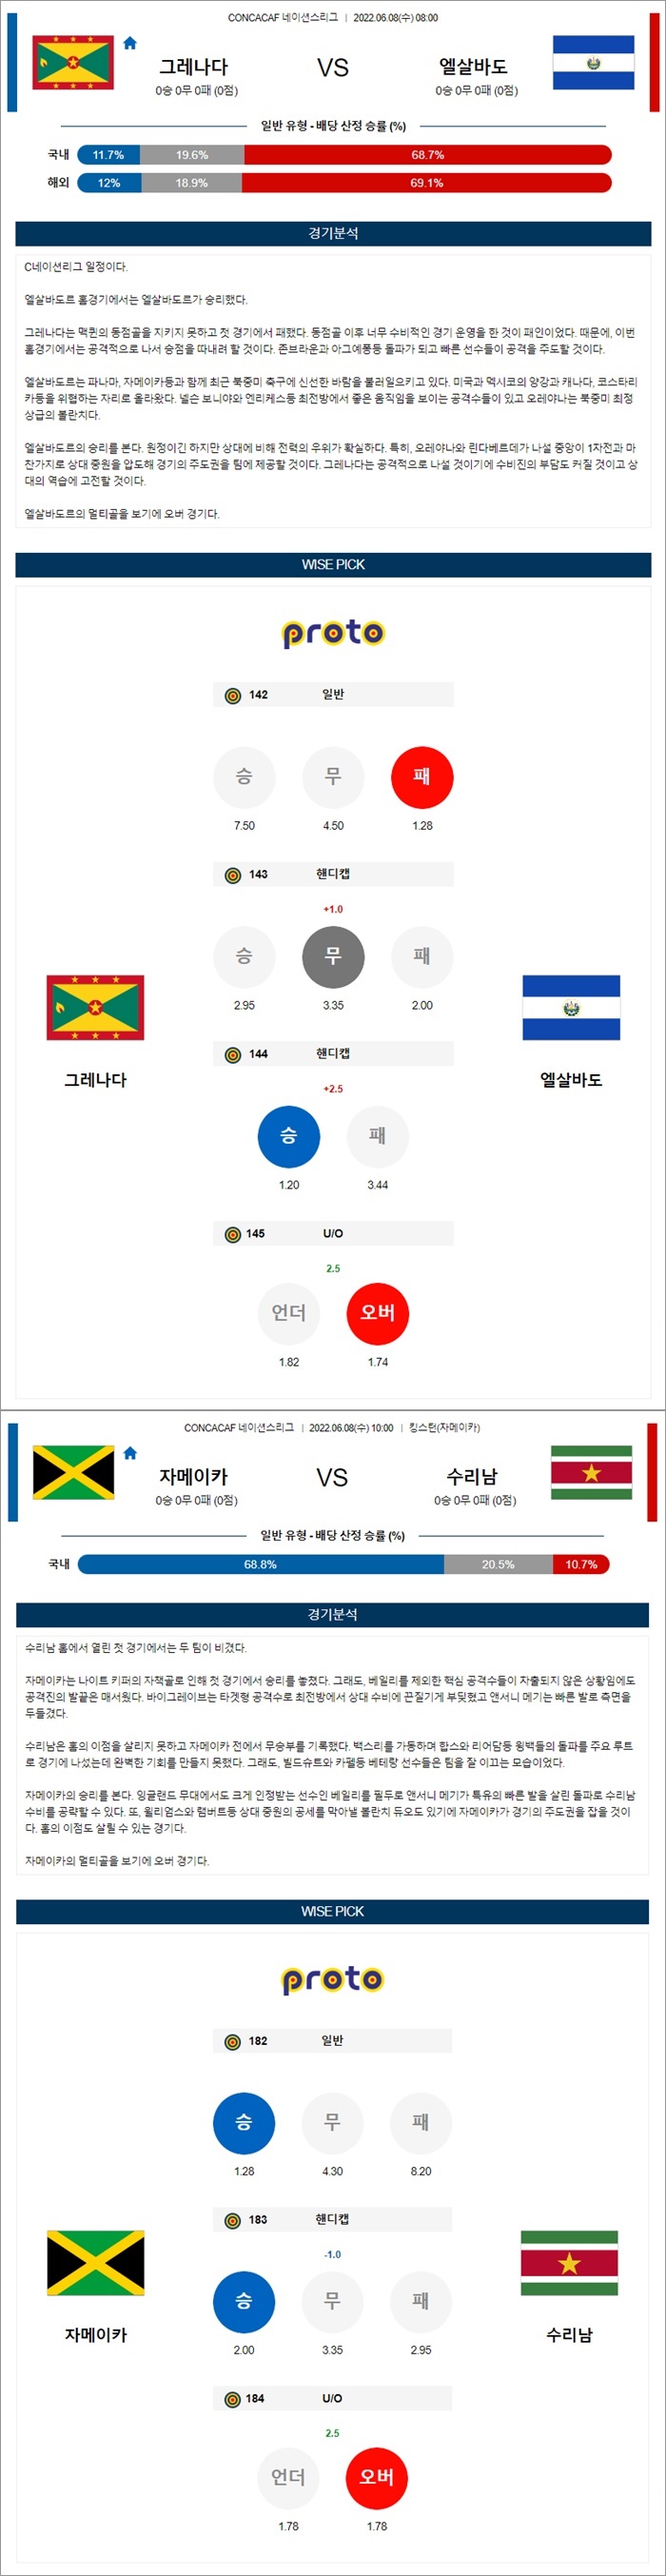 6월08일 CONCACAF 네이션스리그 2경기 분석.jpg